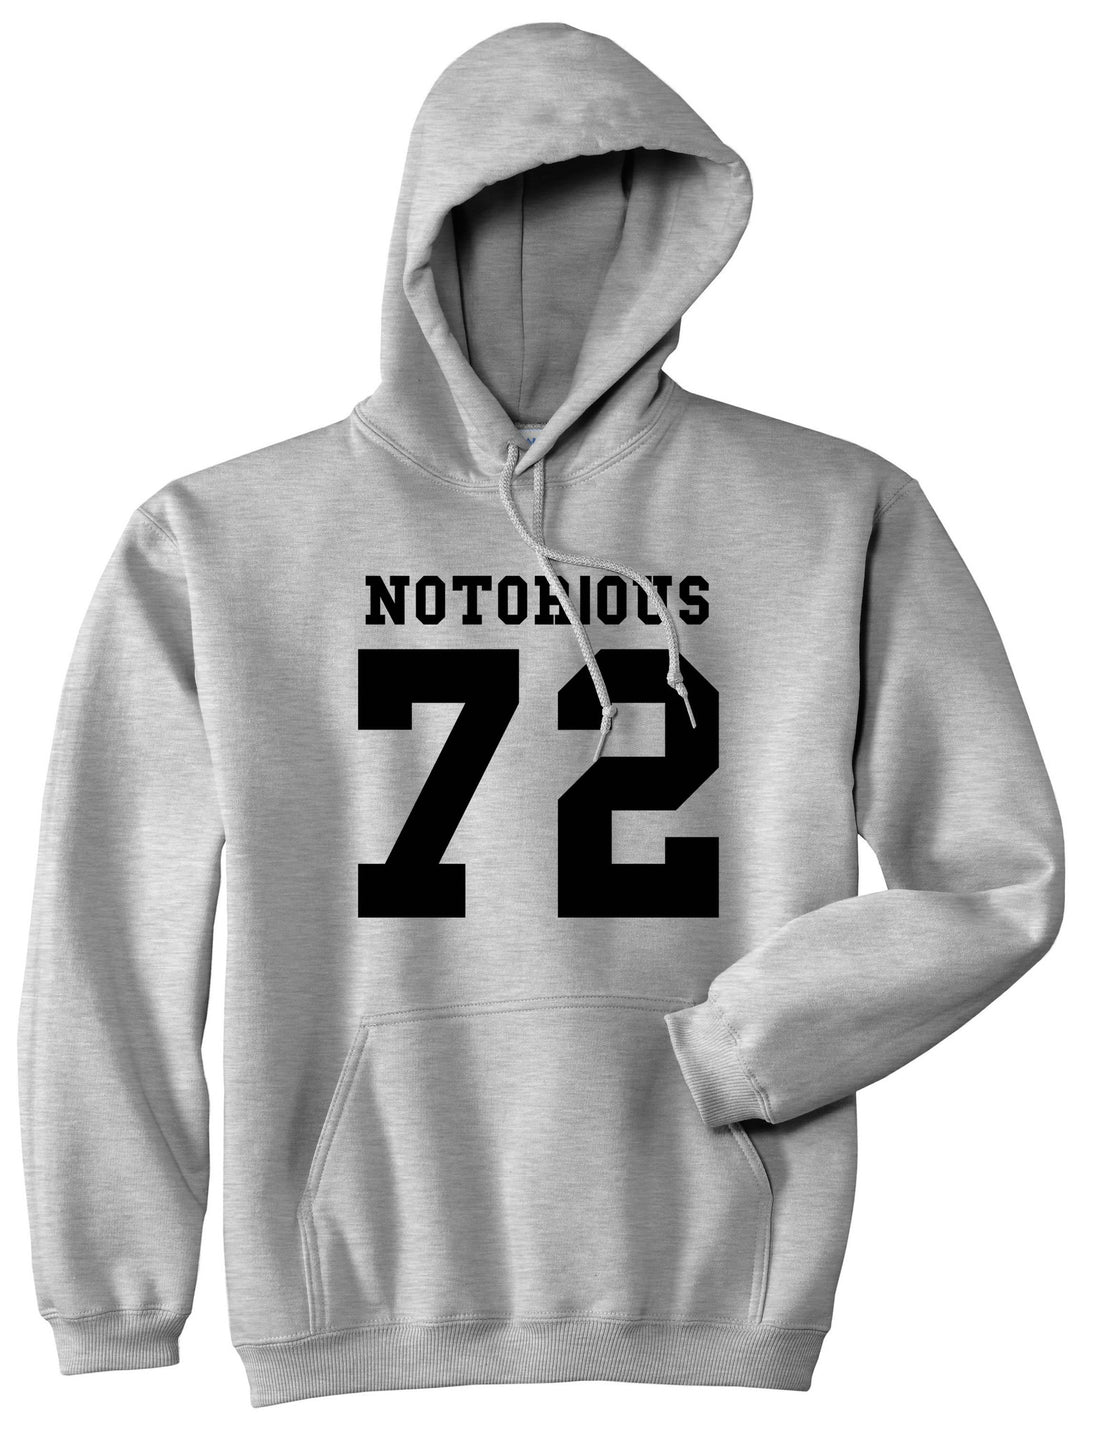 Notorious 72 Team Pullover Hoodie Hoody in Grey by Kings Of NY